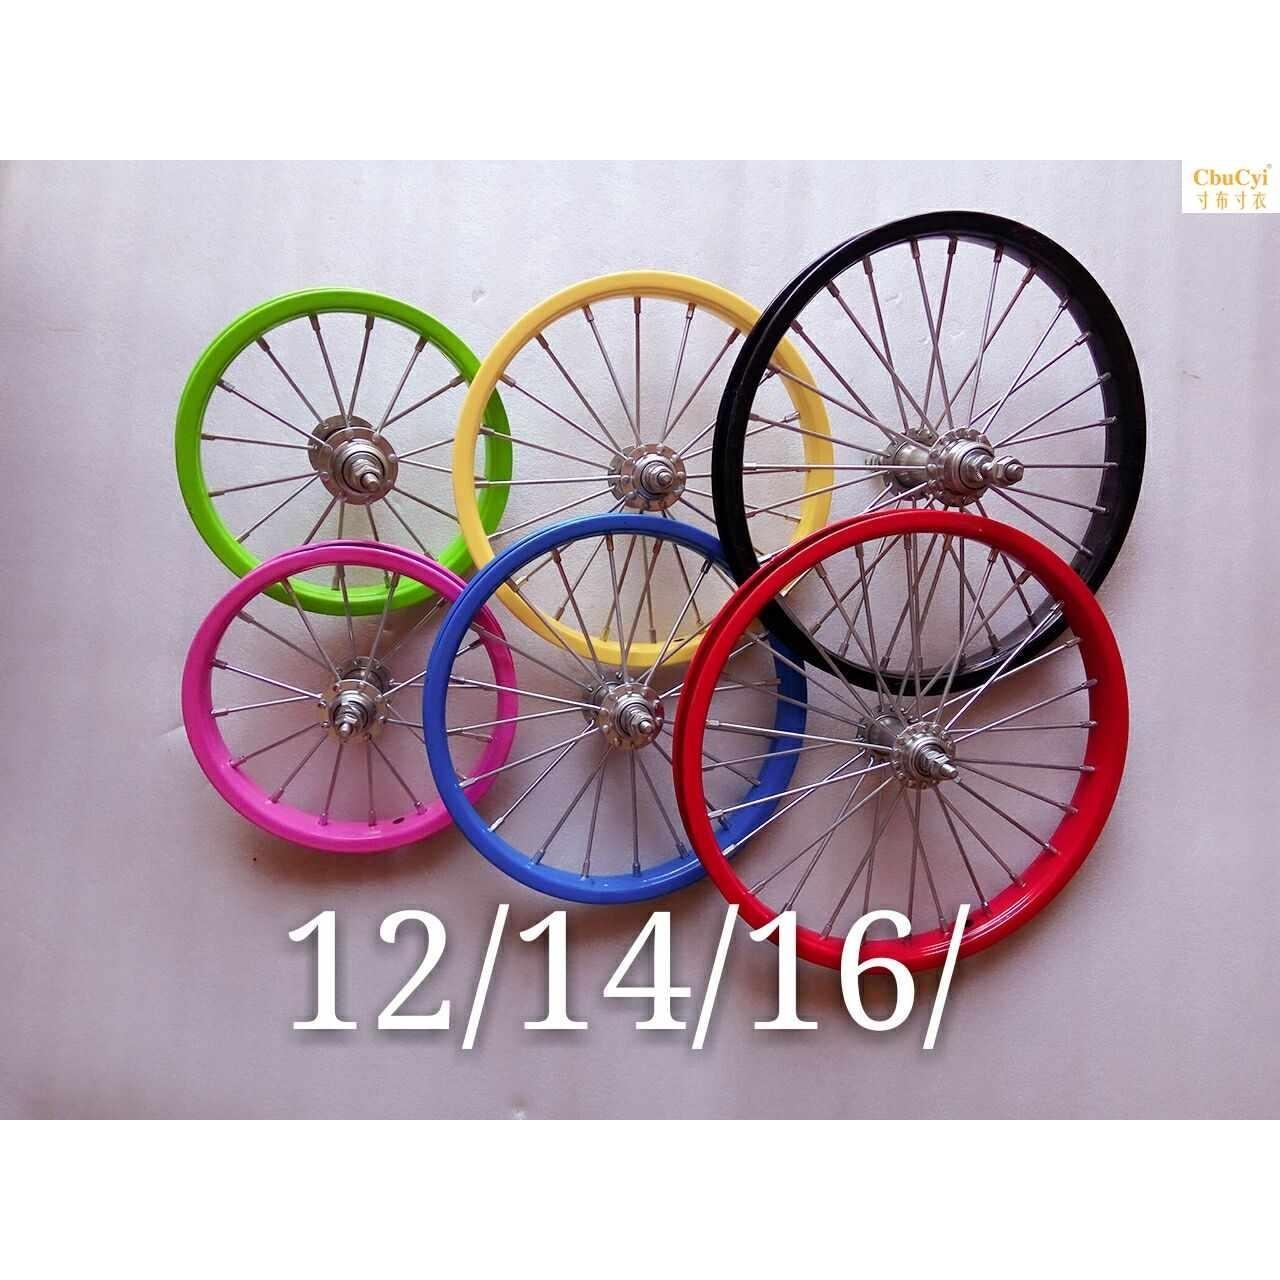 包邮童车配件12,14,16寸儿童自行车折叠车车圈前后轮车轮